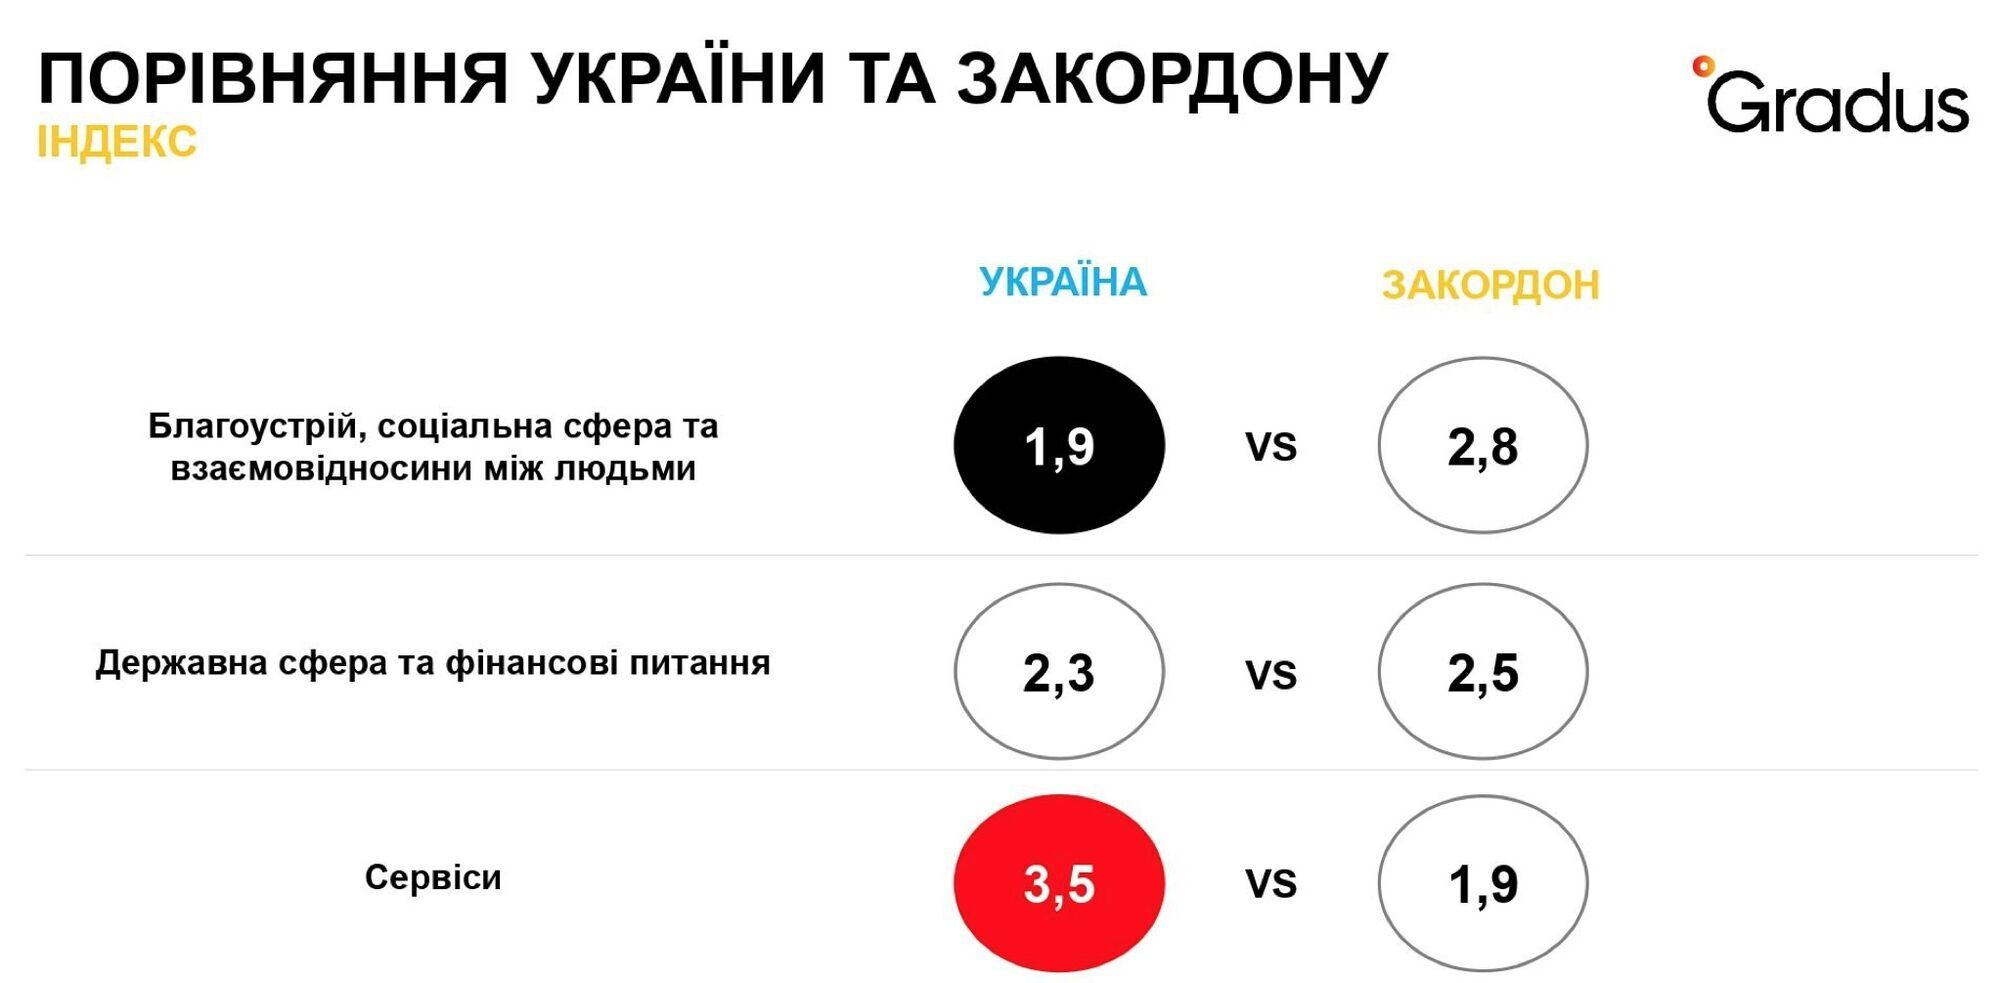 Якість сервісів краща в Україні, показало опитування